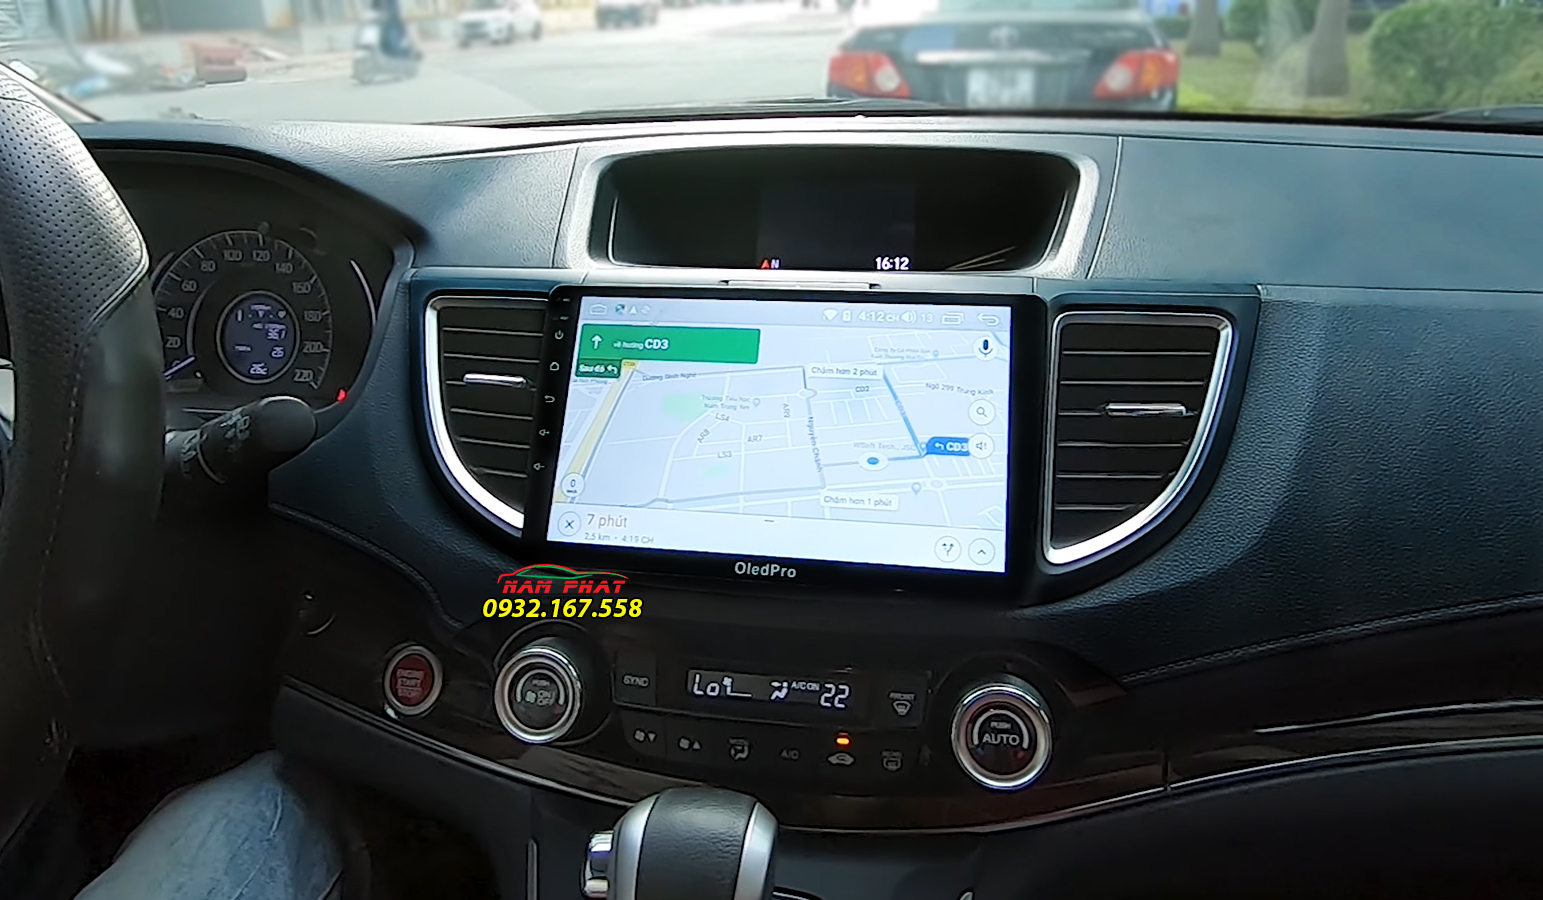 Màn hình Android OledPro X3 trên Honda CR-V